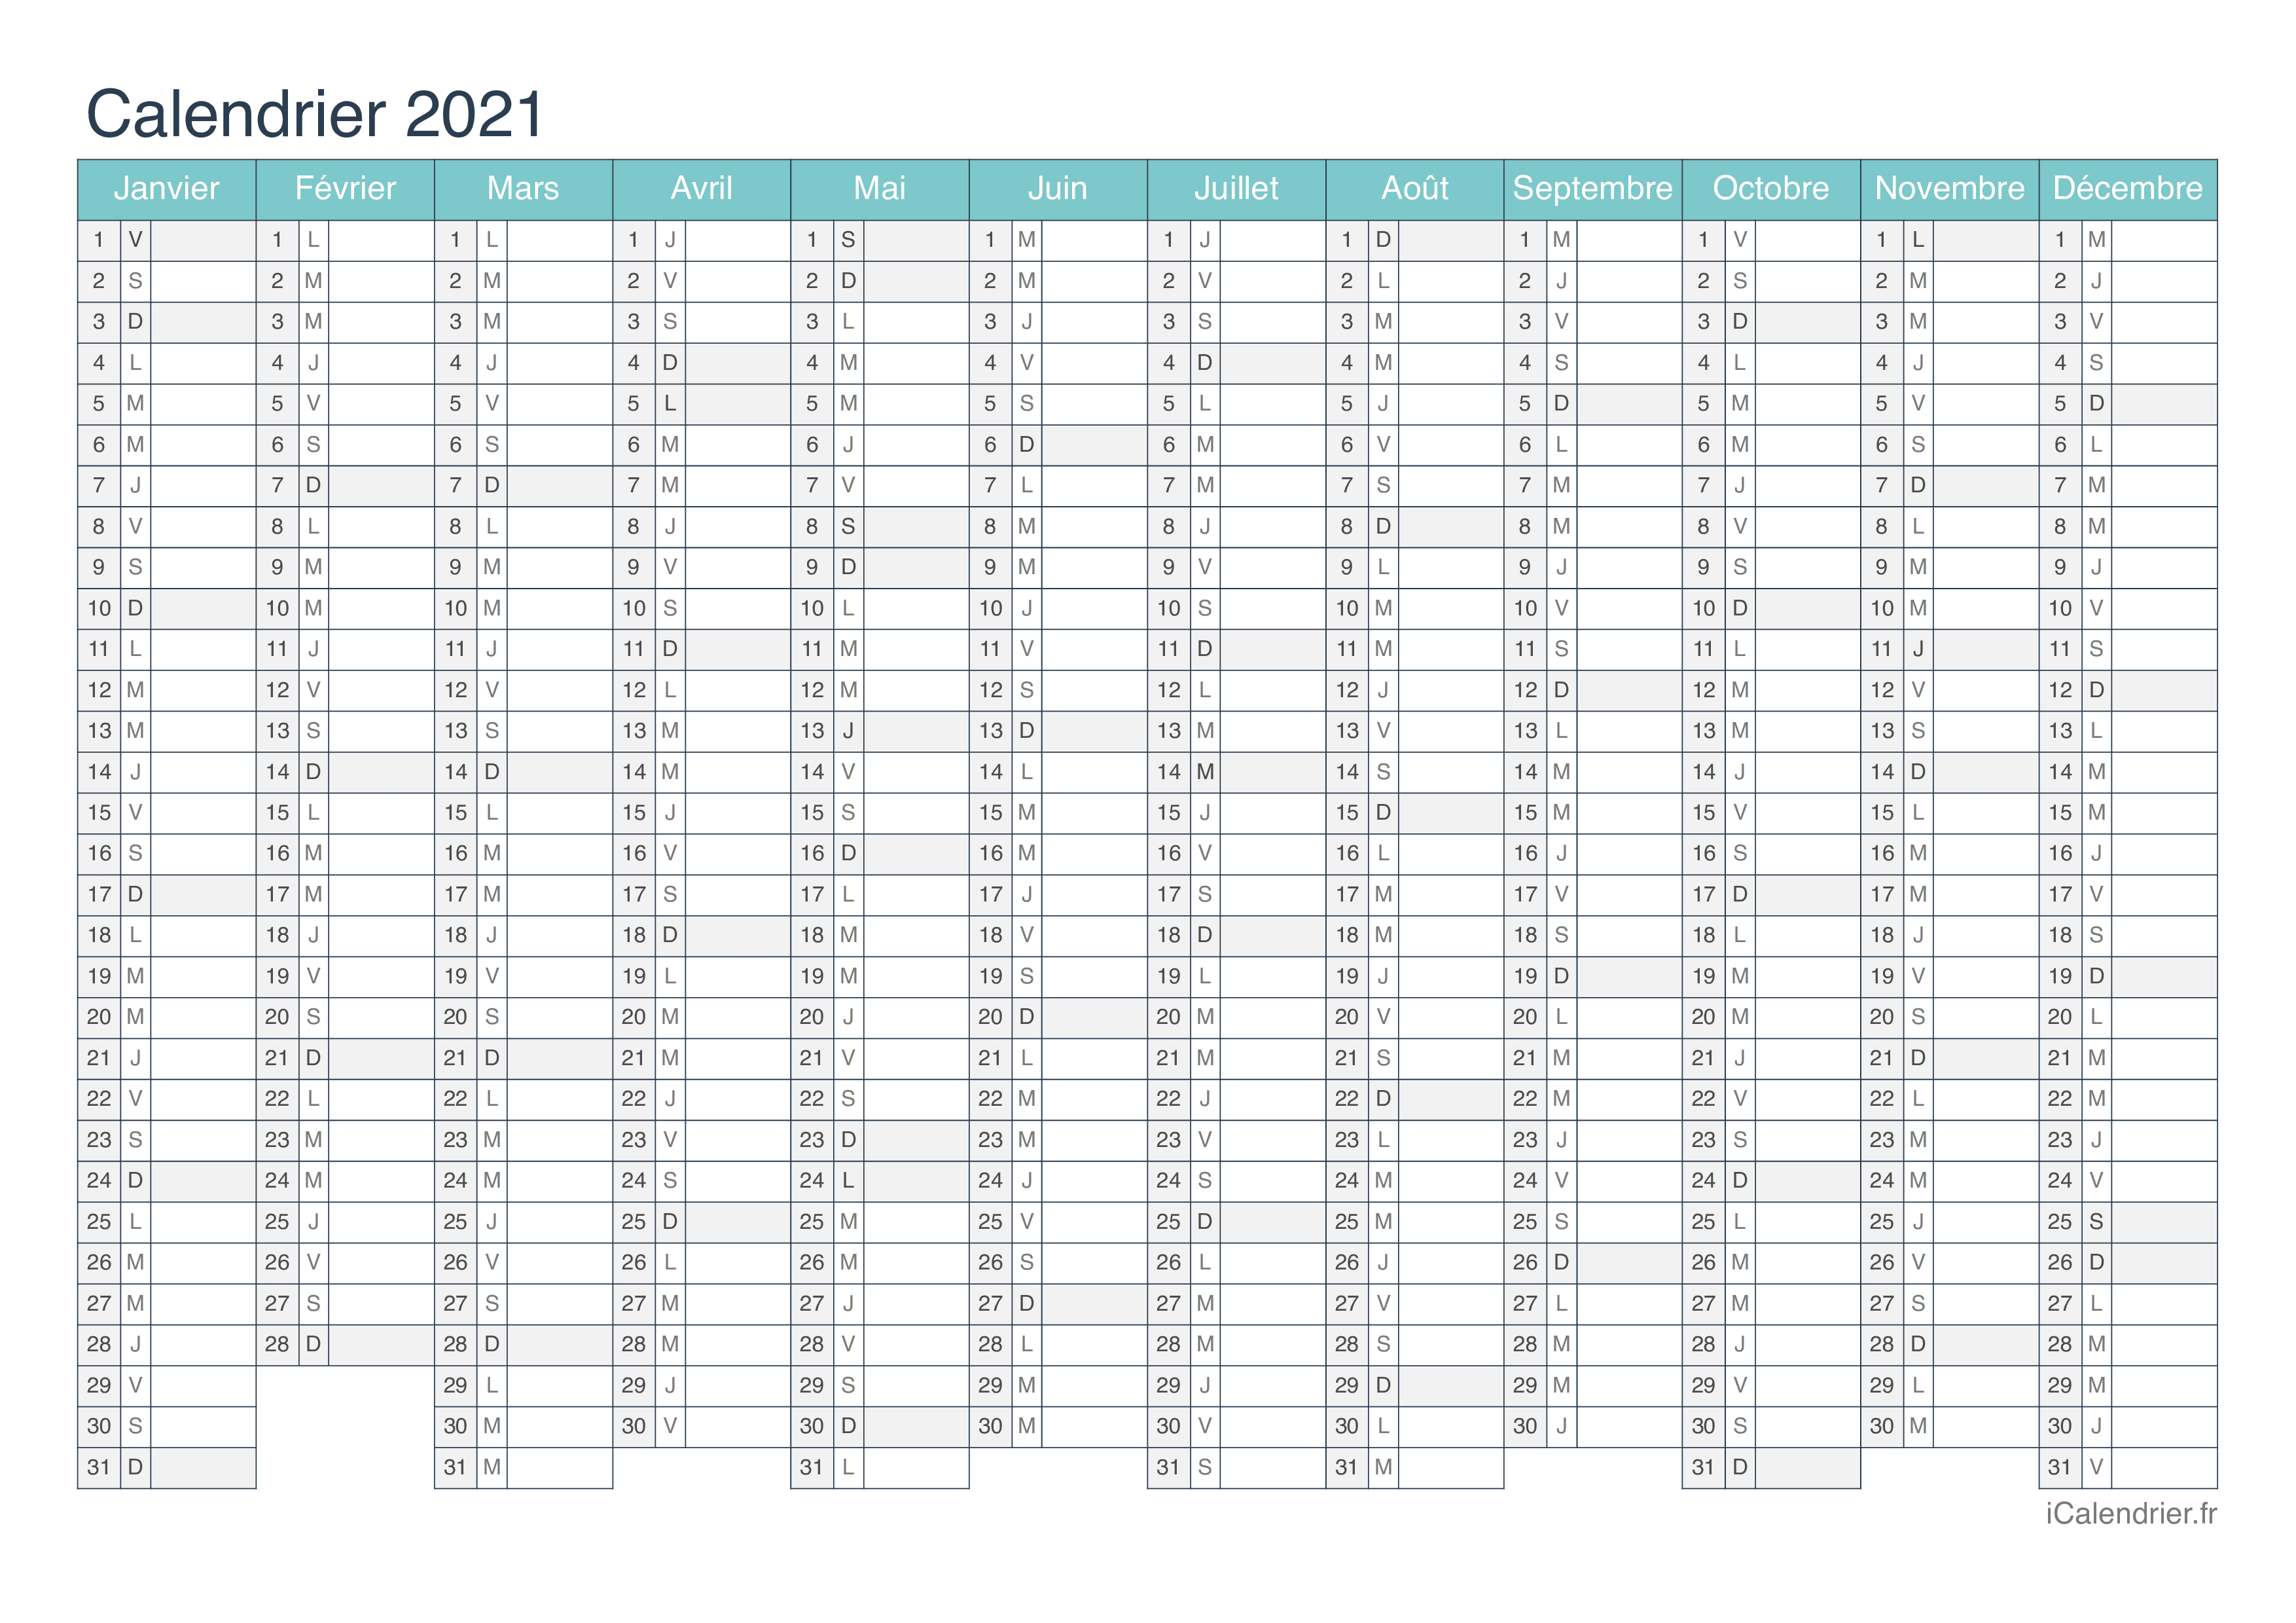 Calendrier Civil 2021 Calendrier 2021 à imprimer PDF et Excel   iCalendrier